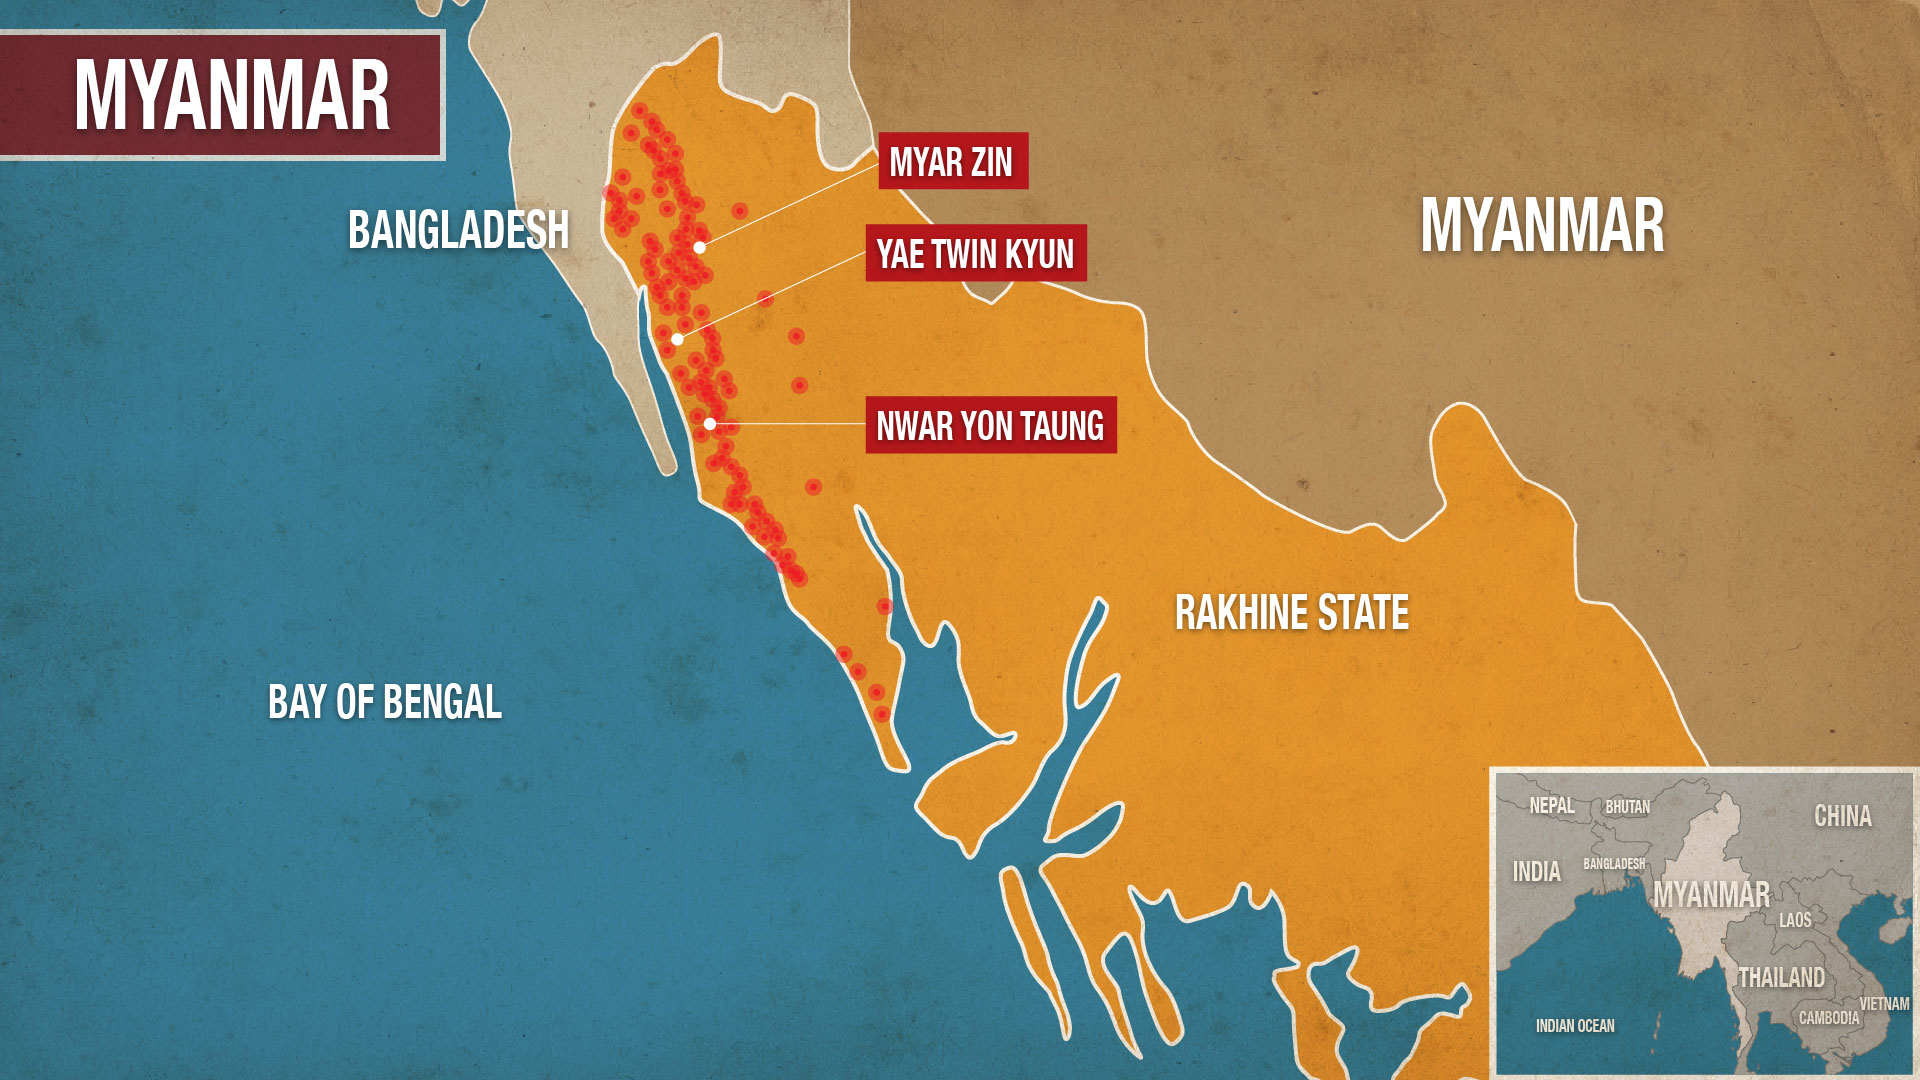 Myanmar - Rakhine state-fires-01.jpg